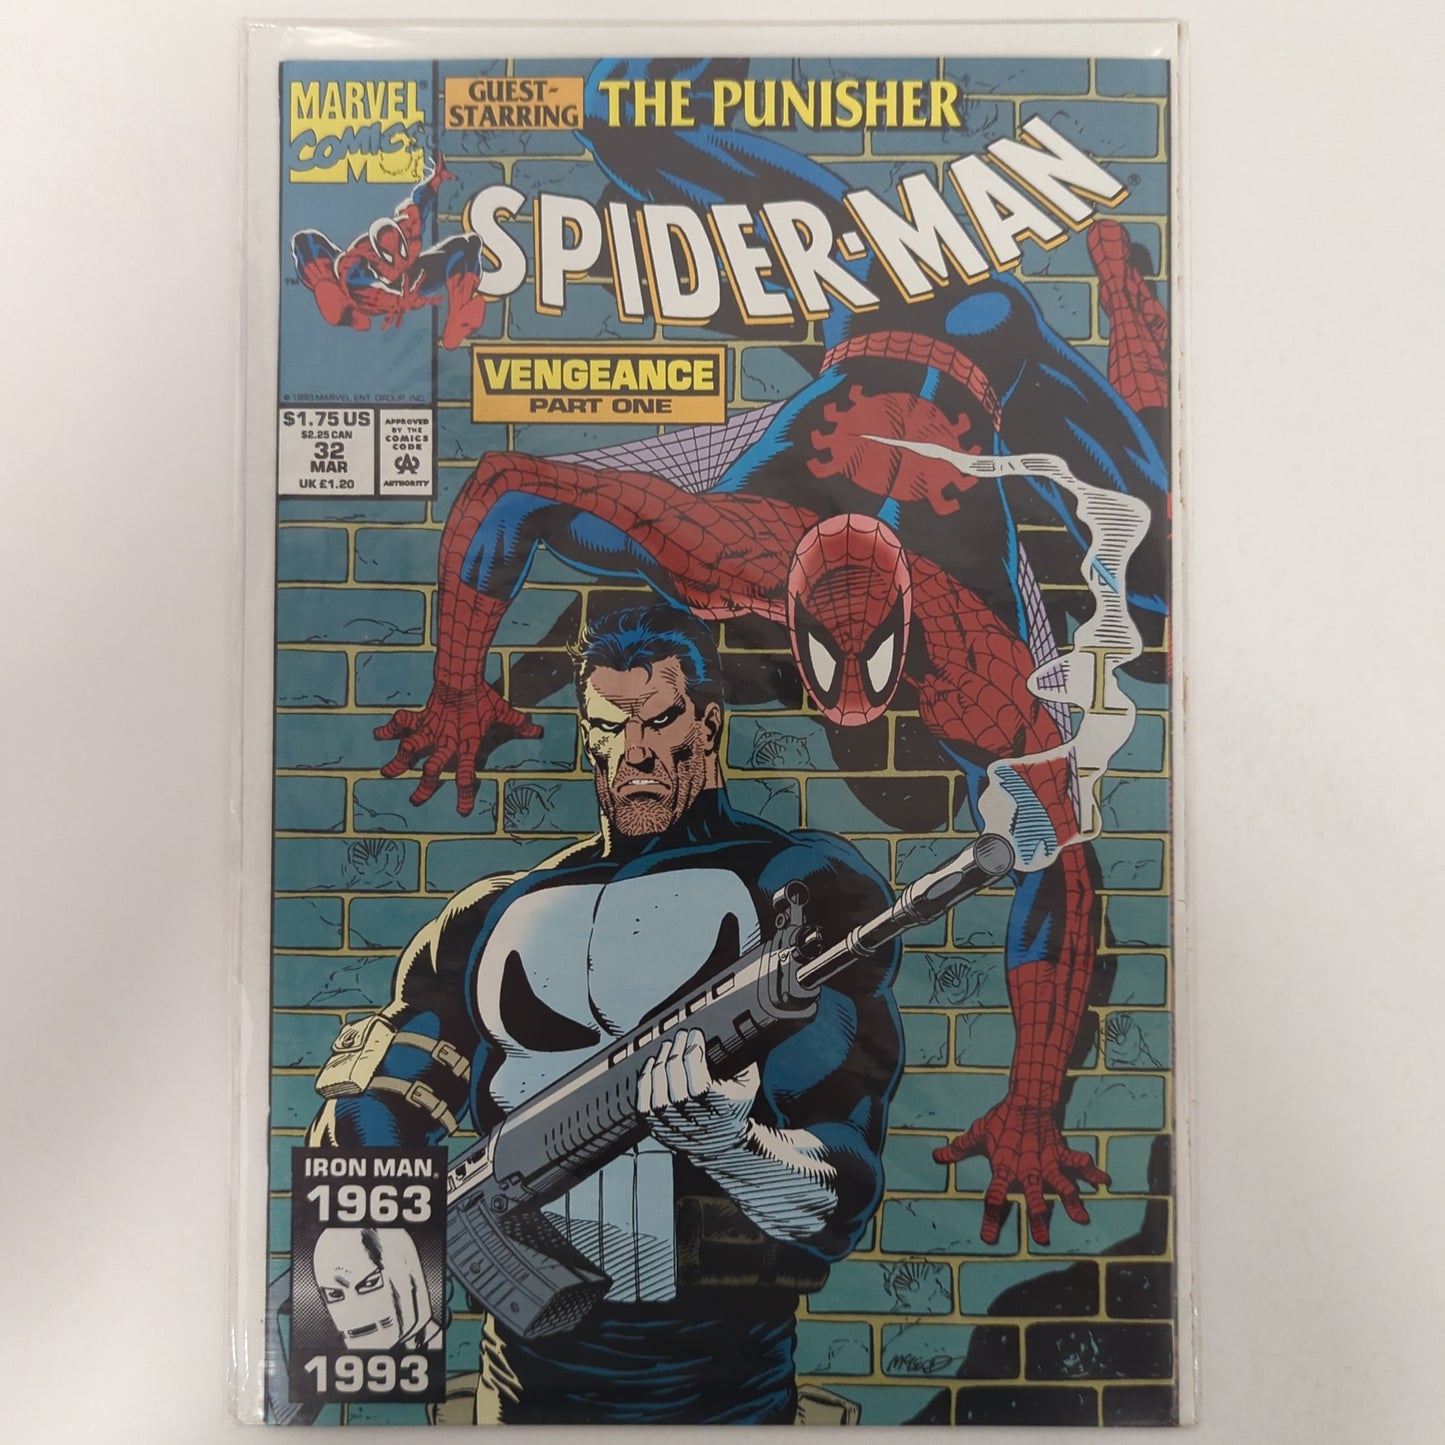 Spider-Man #32